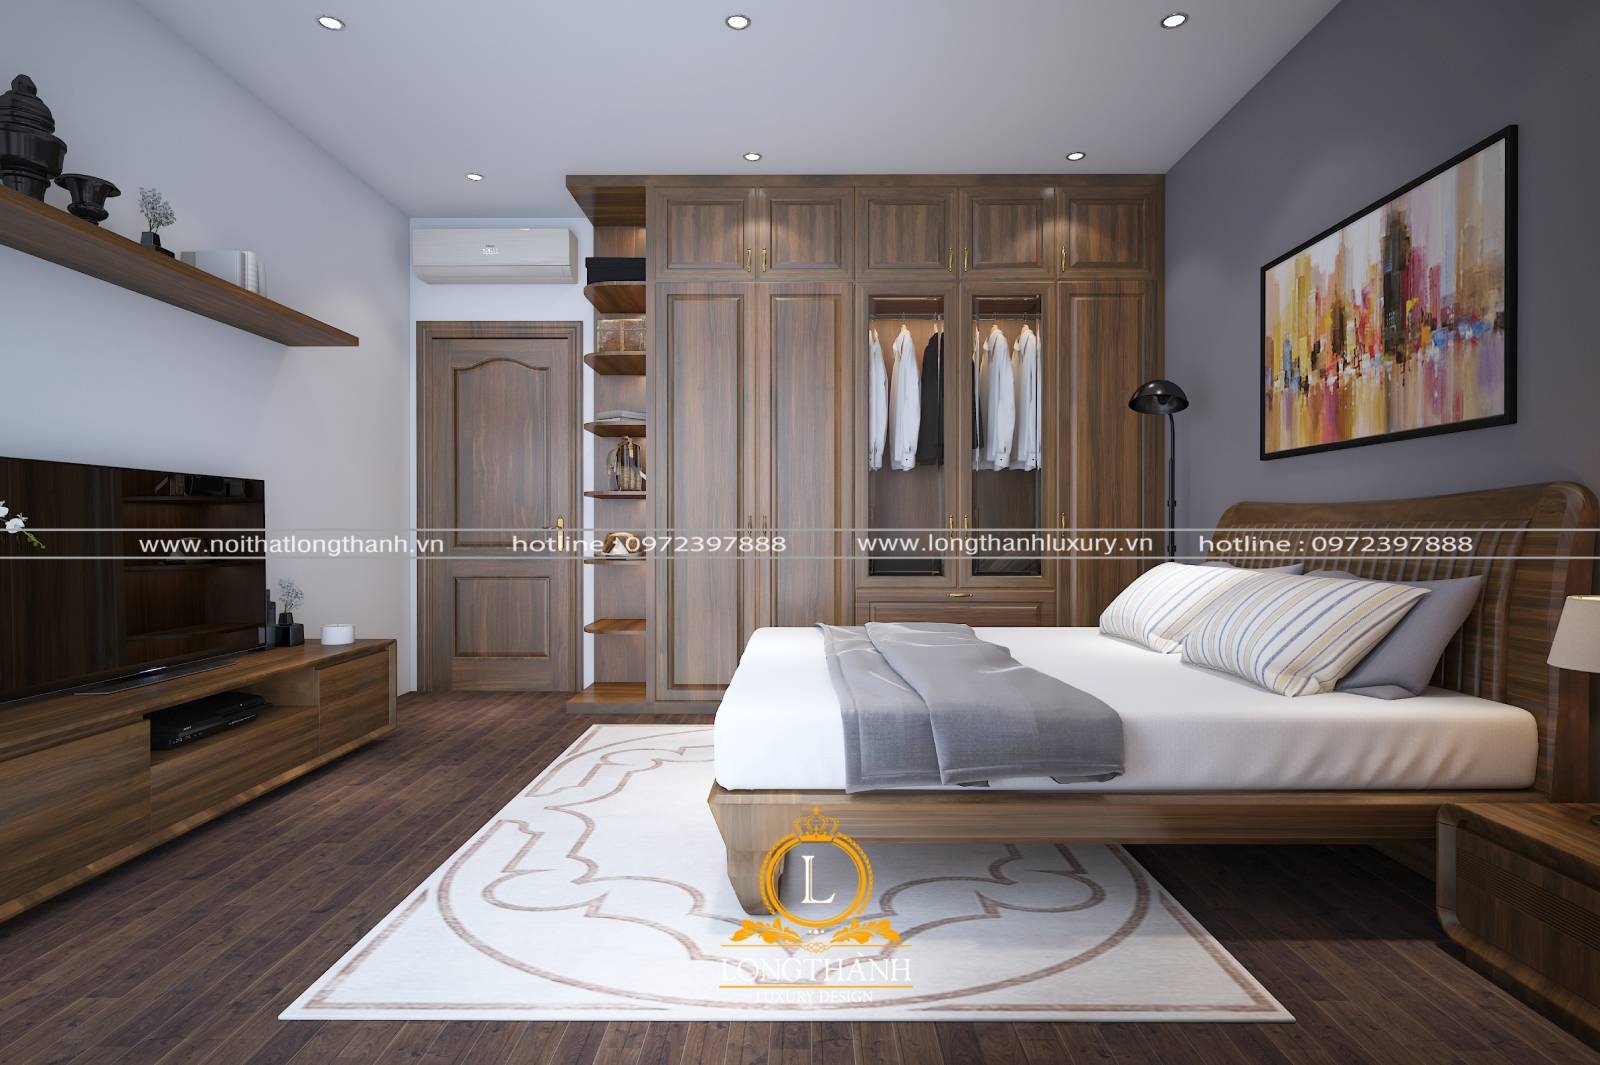 Giường ngủ cao cấp phong cách hiện đại được làm từ gỗ Sồi tự nhiên